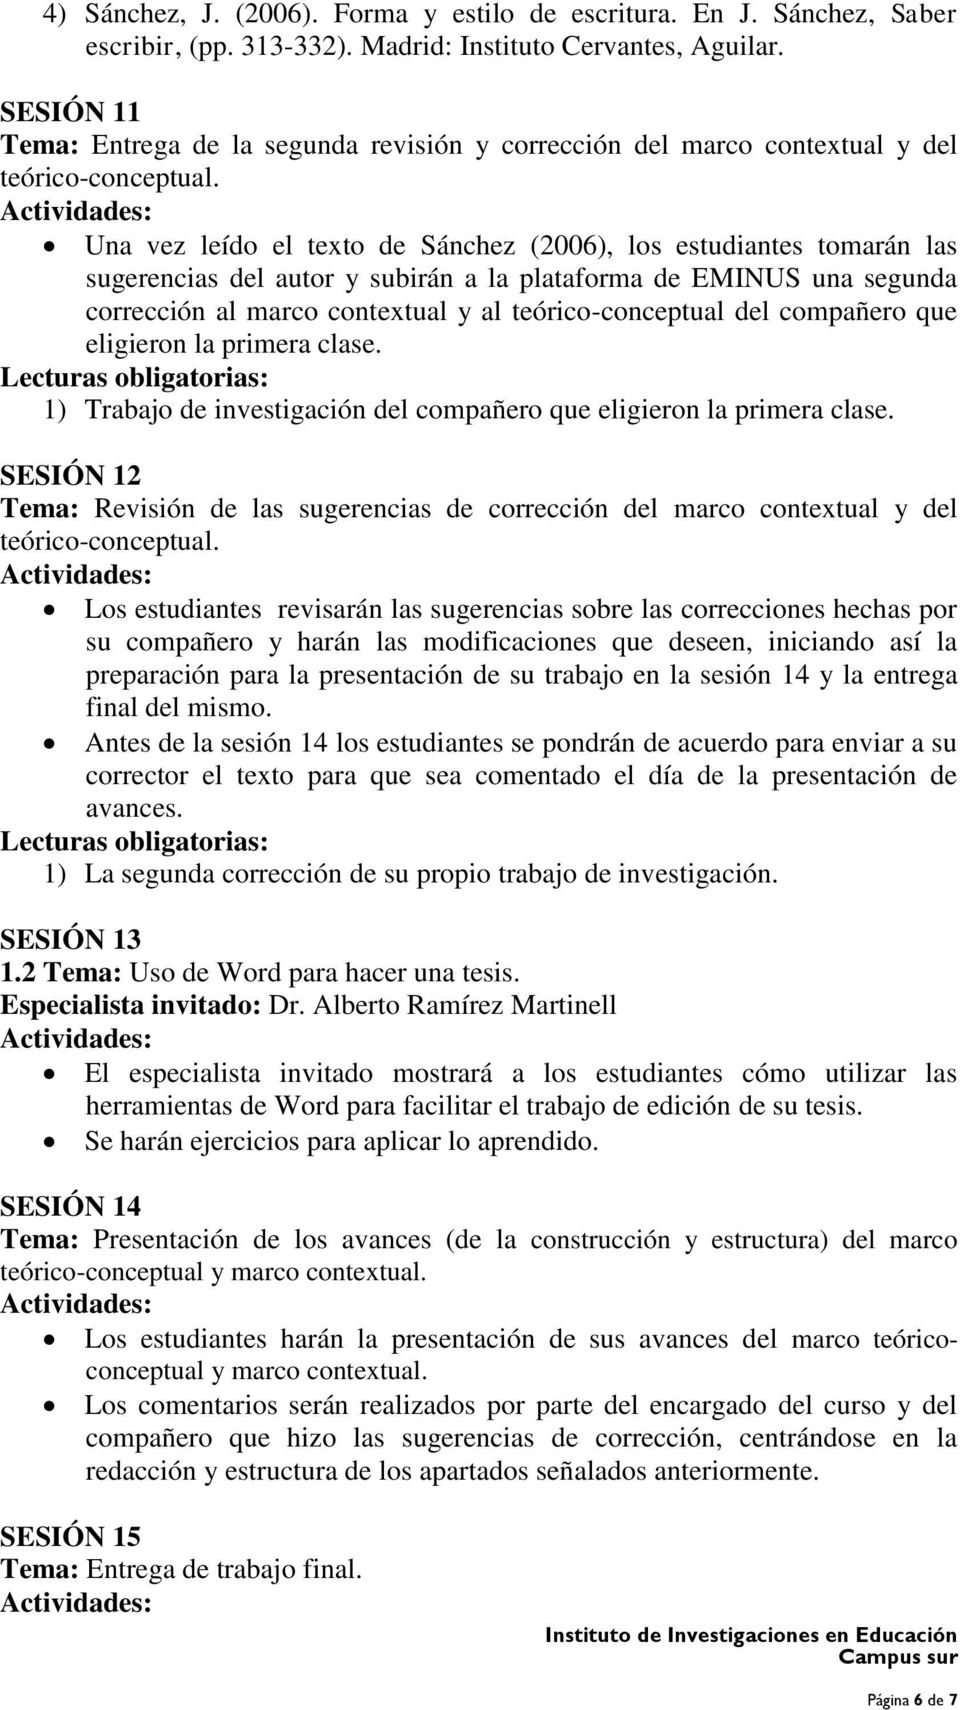 Una vez leído el texto de Sánchez (2006), los estudiantes tomarán las sugerencias del autor y subirán a la plataforma de EMINUS una segunda corrección al marco contextual y al teórico-conceptual del